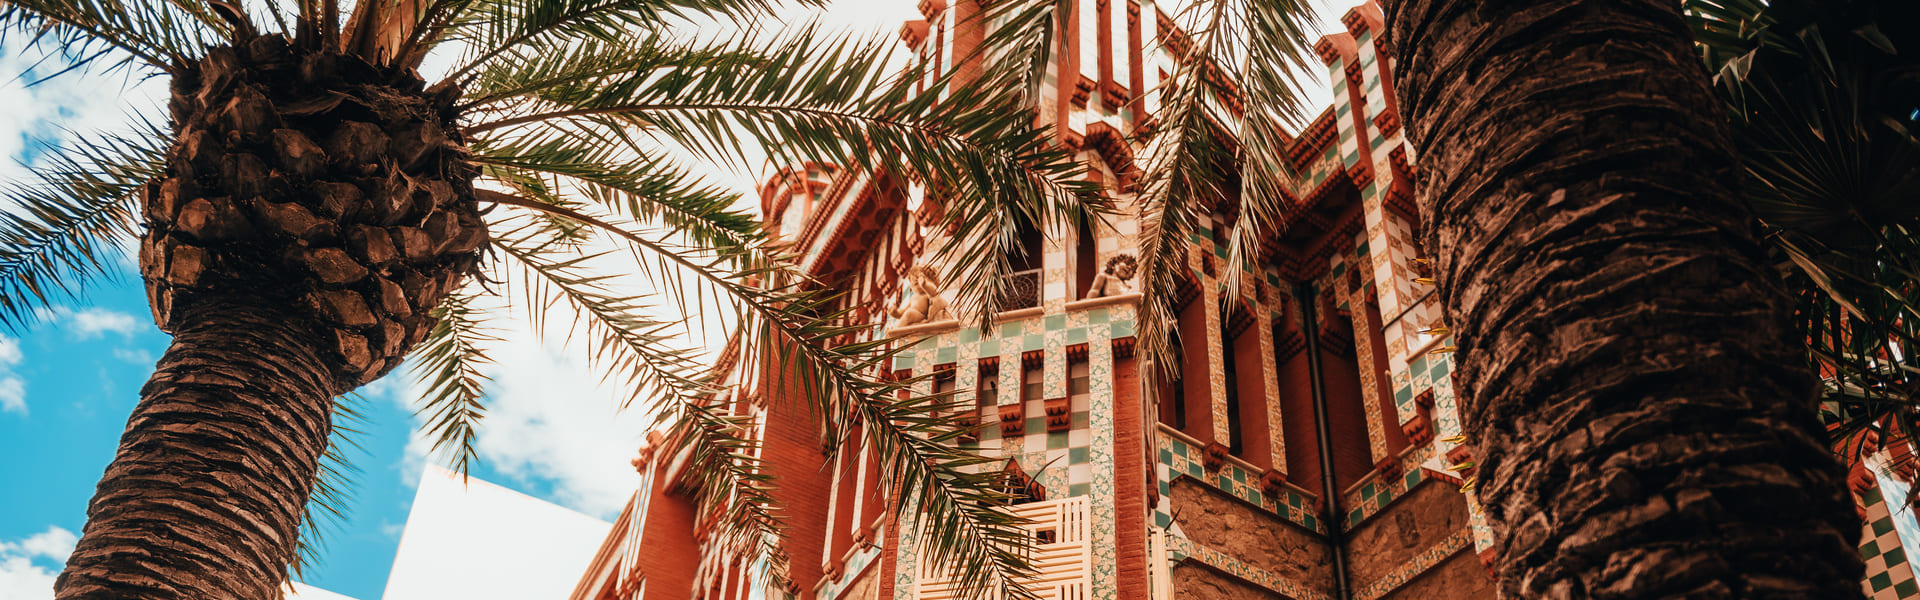 Descubre la Casa Vicens de Gaudí en verano + pastel